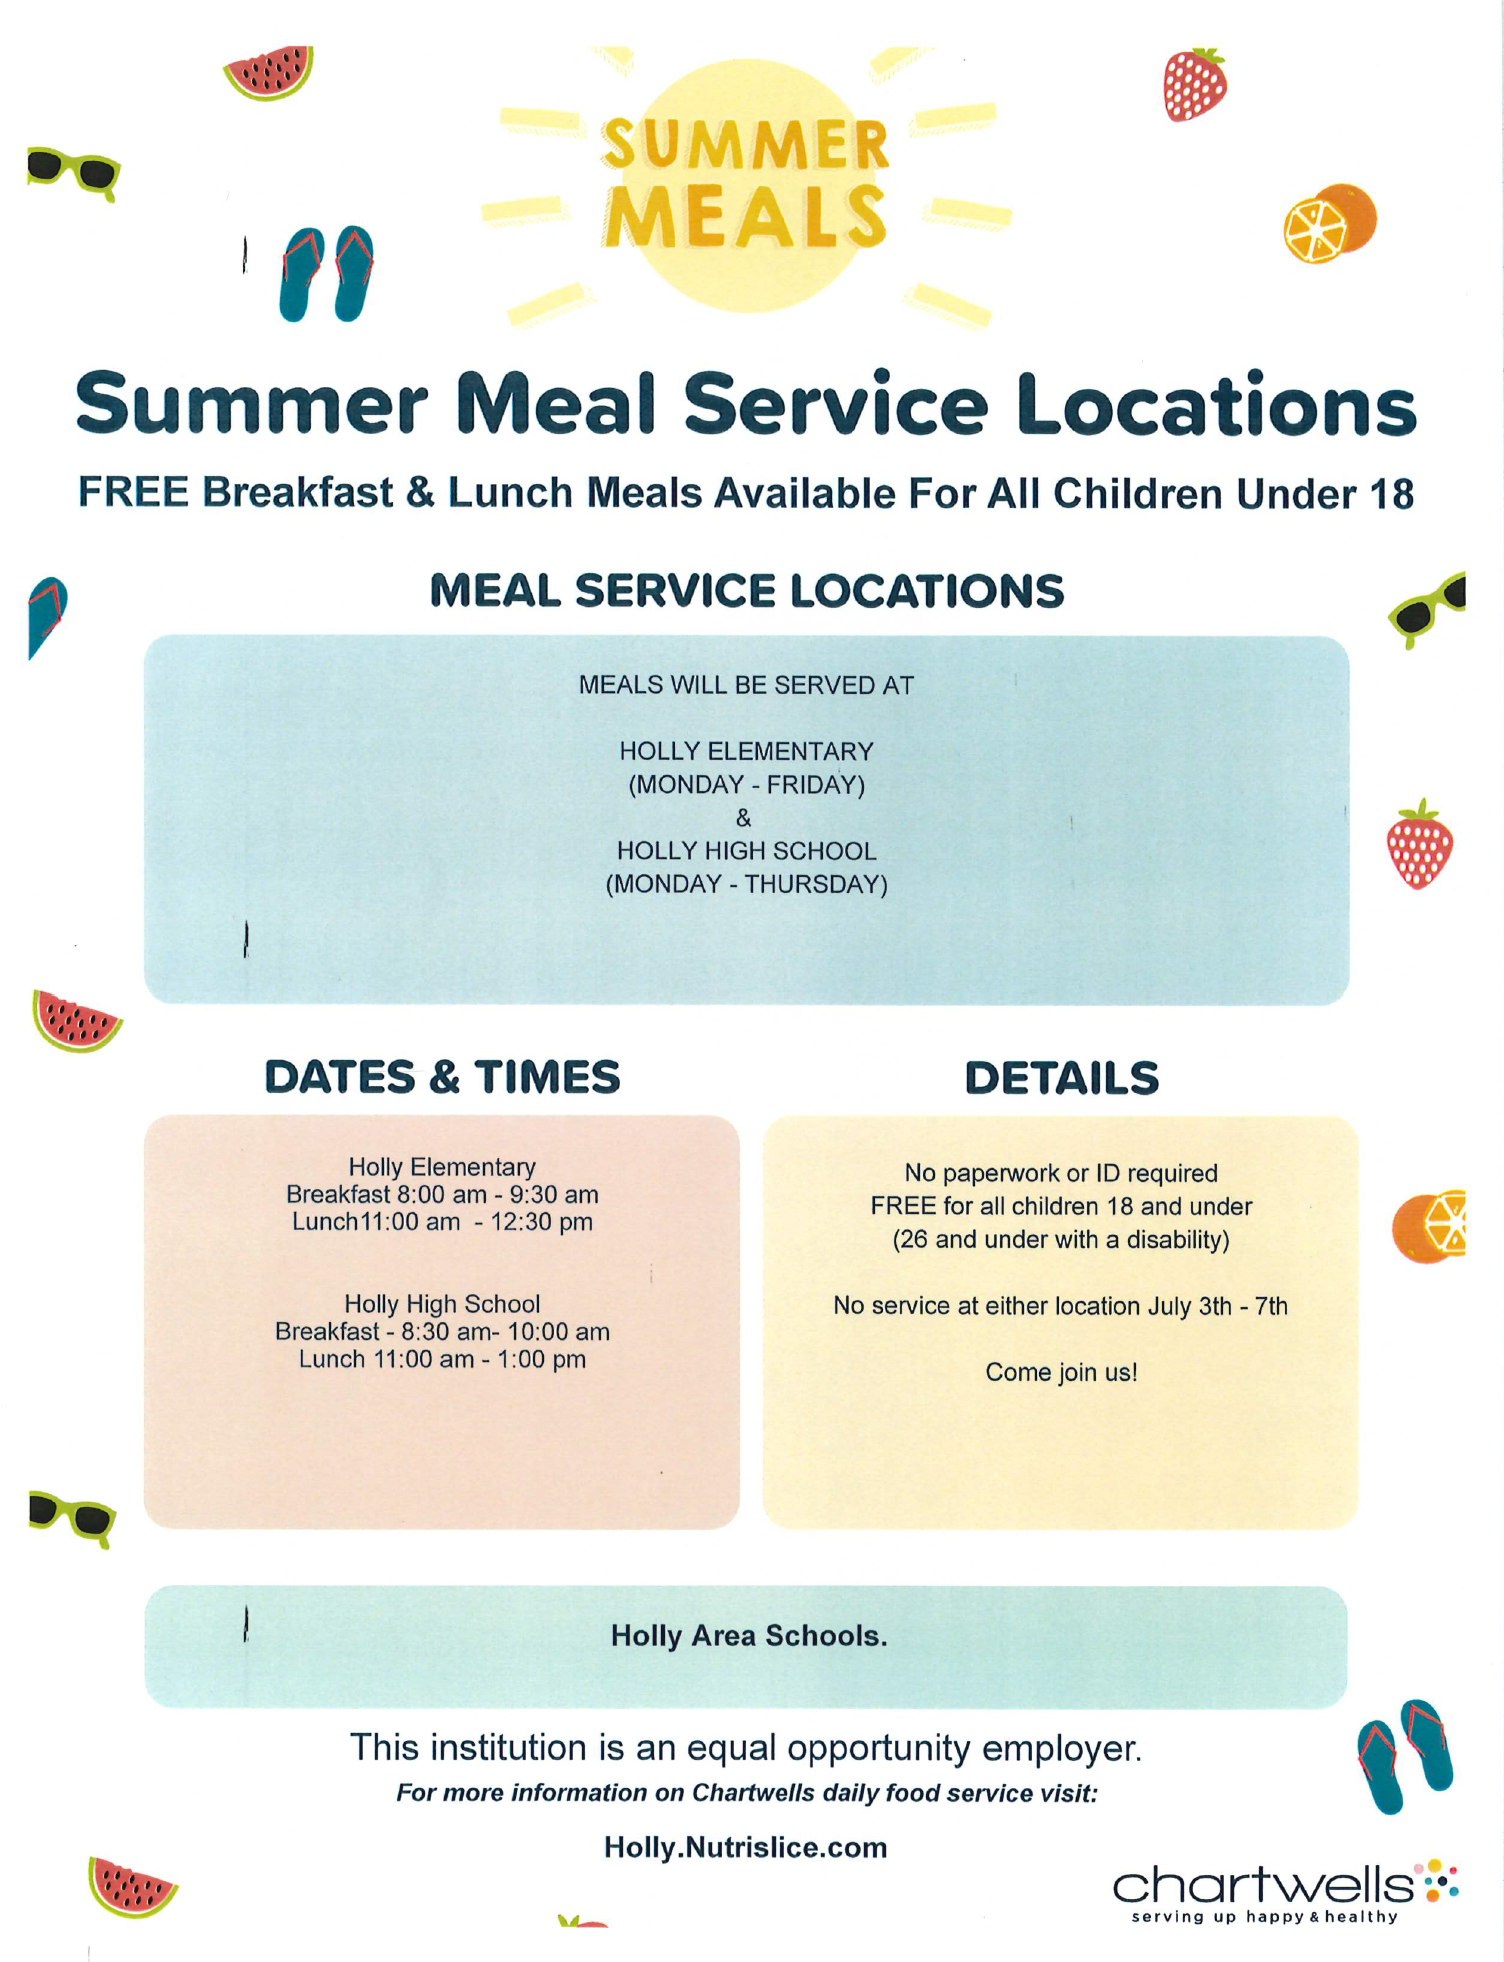 Summer Meals Flyer 2023 Image - revised 6-27-23